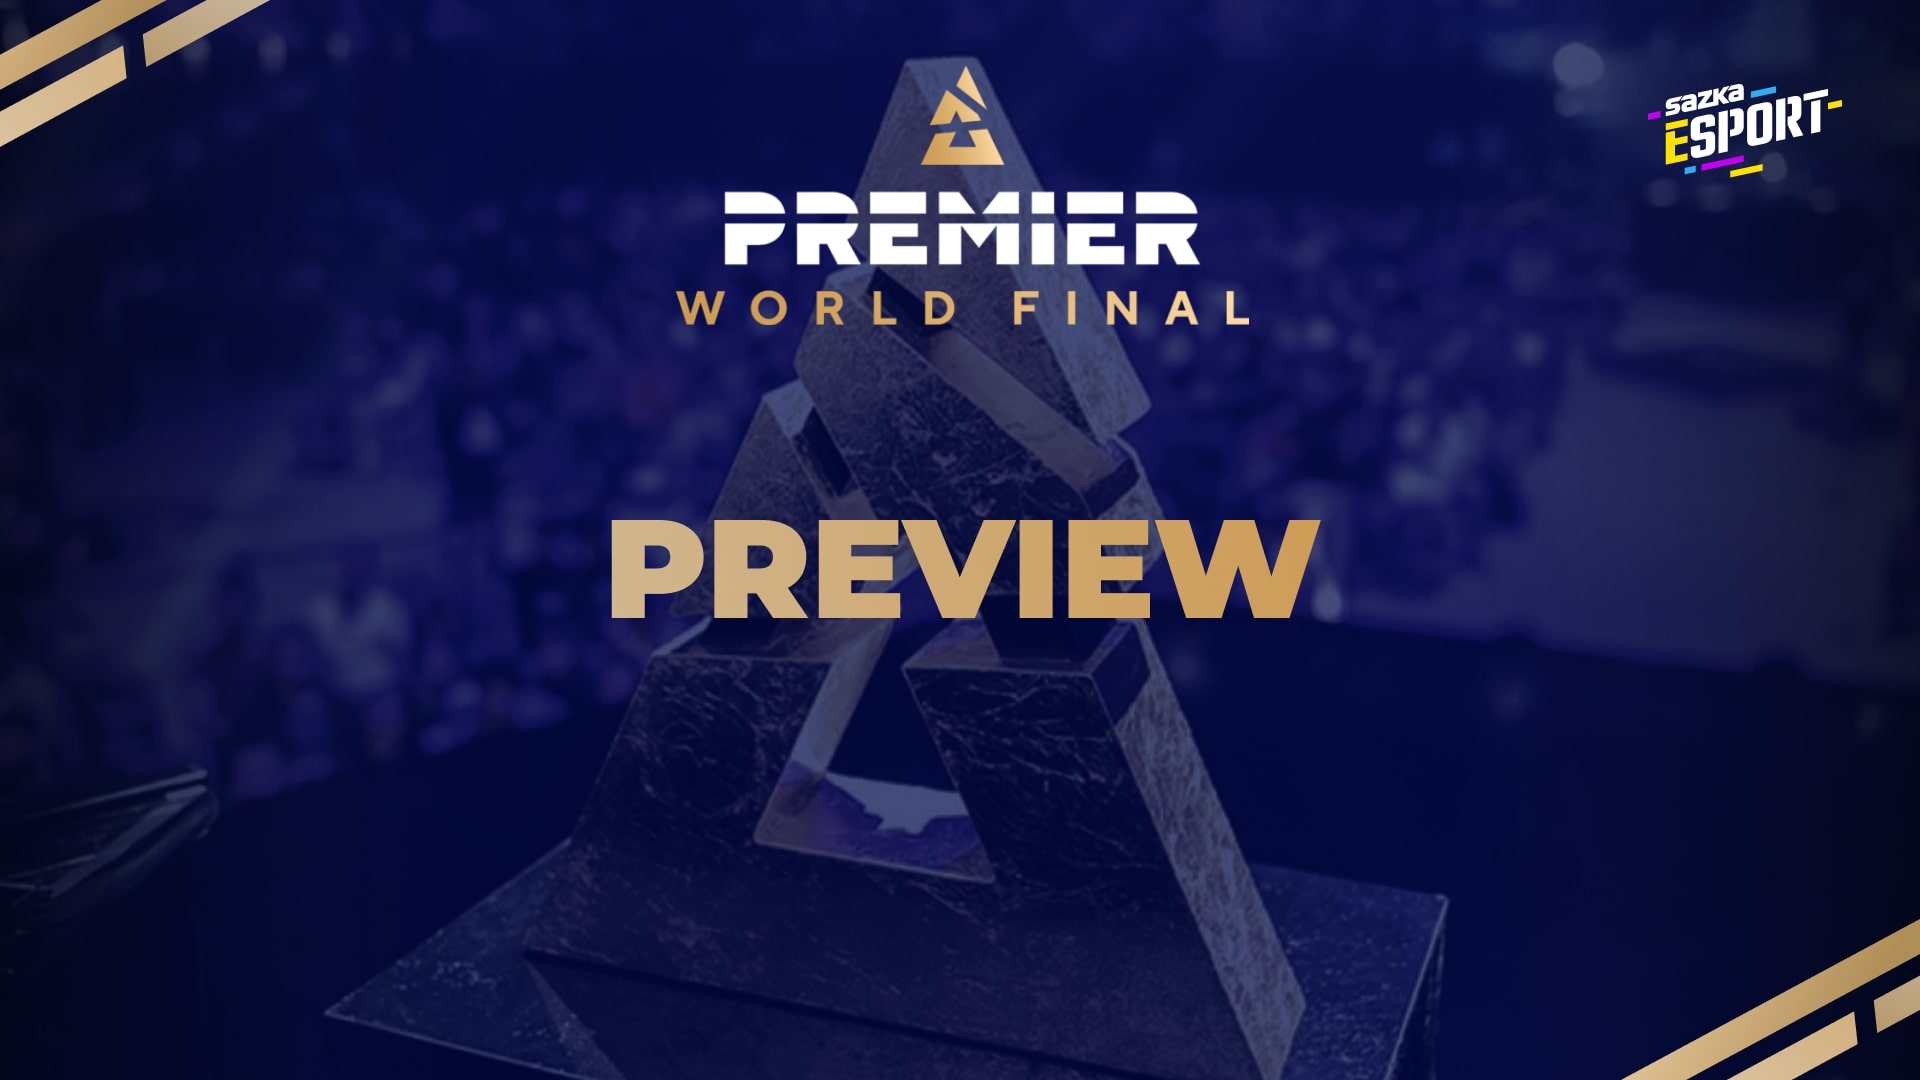 BLAST Premier World Final: Boj o milion dolarů začíná. Kdo bude největším favoritem?